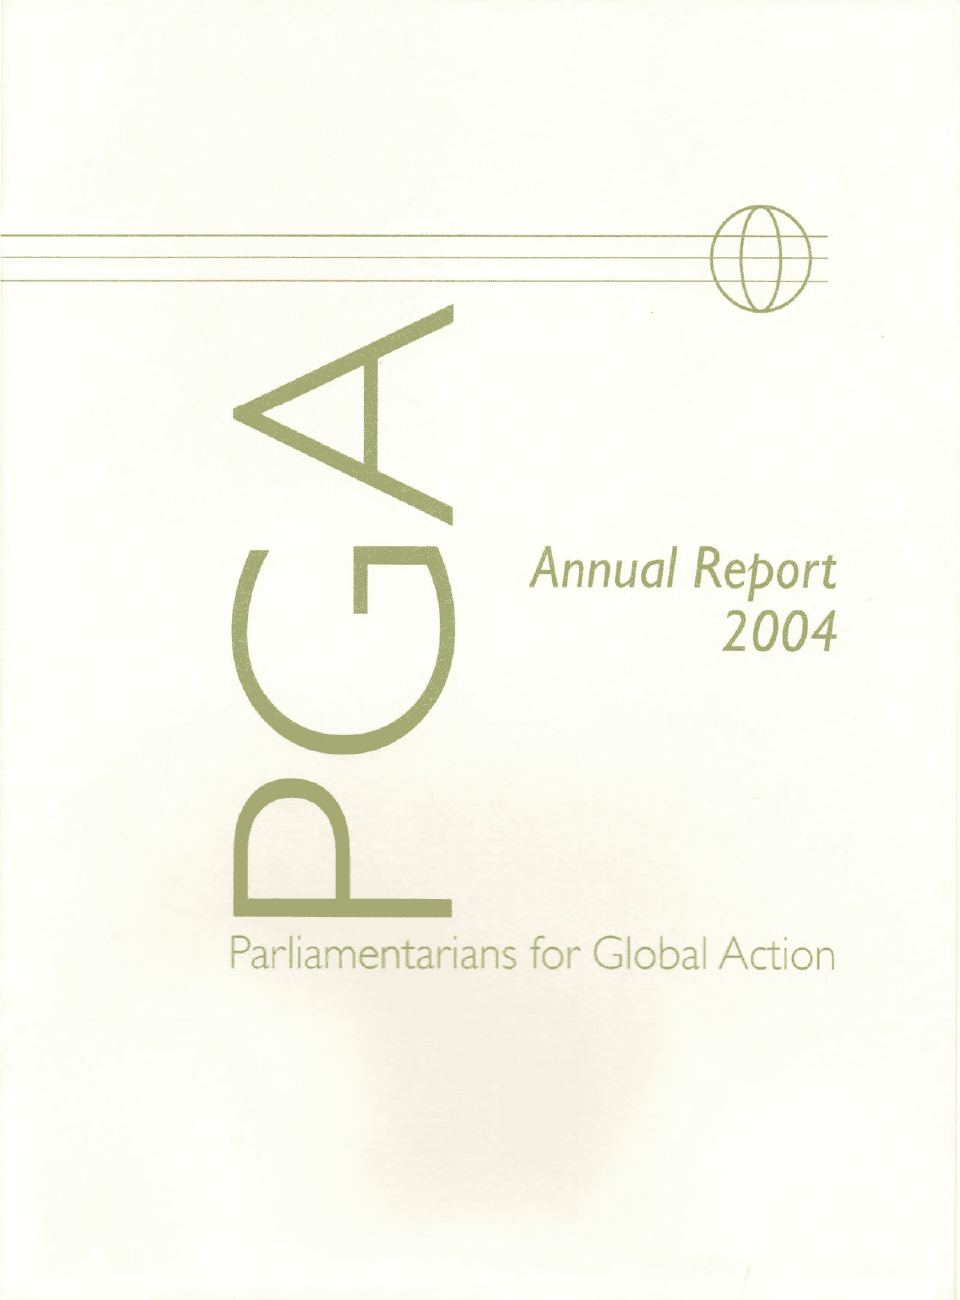 PGA Annual Report 2004